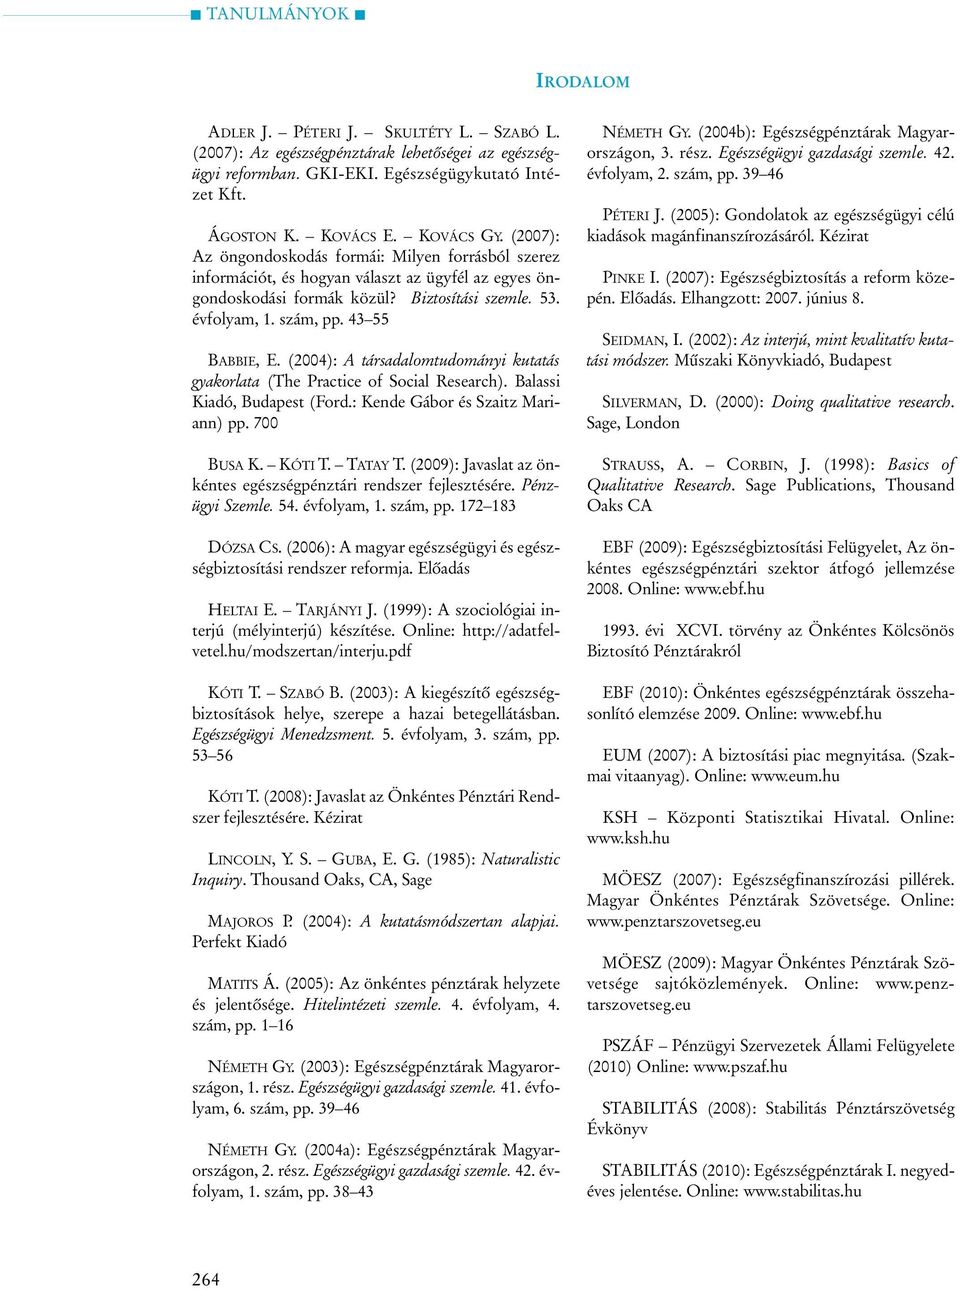 (2004): A társadalomtudományi kutatás gyakorlata (The Practice of Social Research). Balassi Kiadó, Budapest (Ford.: Kende Gábor és Szaitz Mariann) pp. 700 BUSA K. KÓTI T. TATAY T.